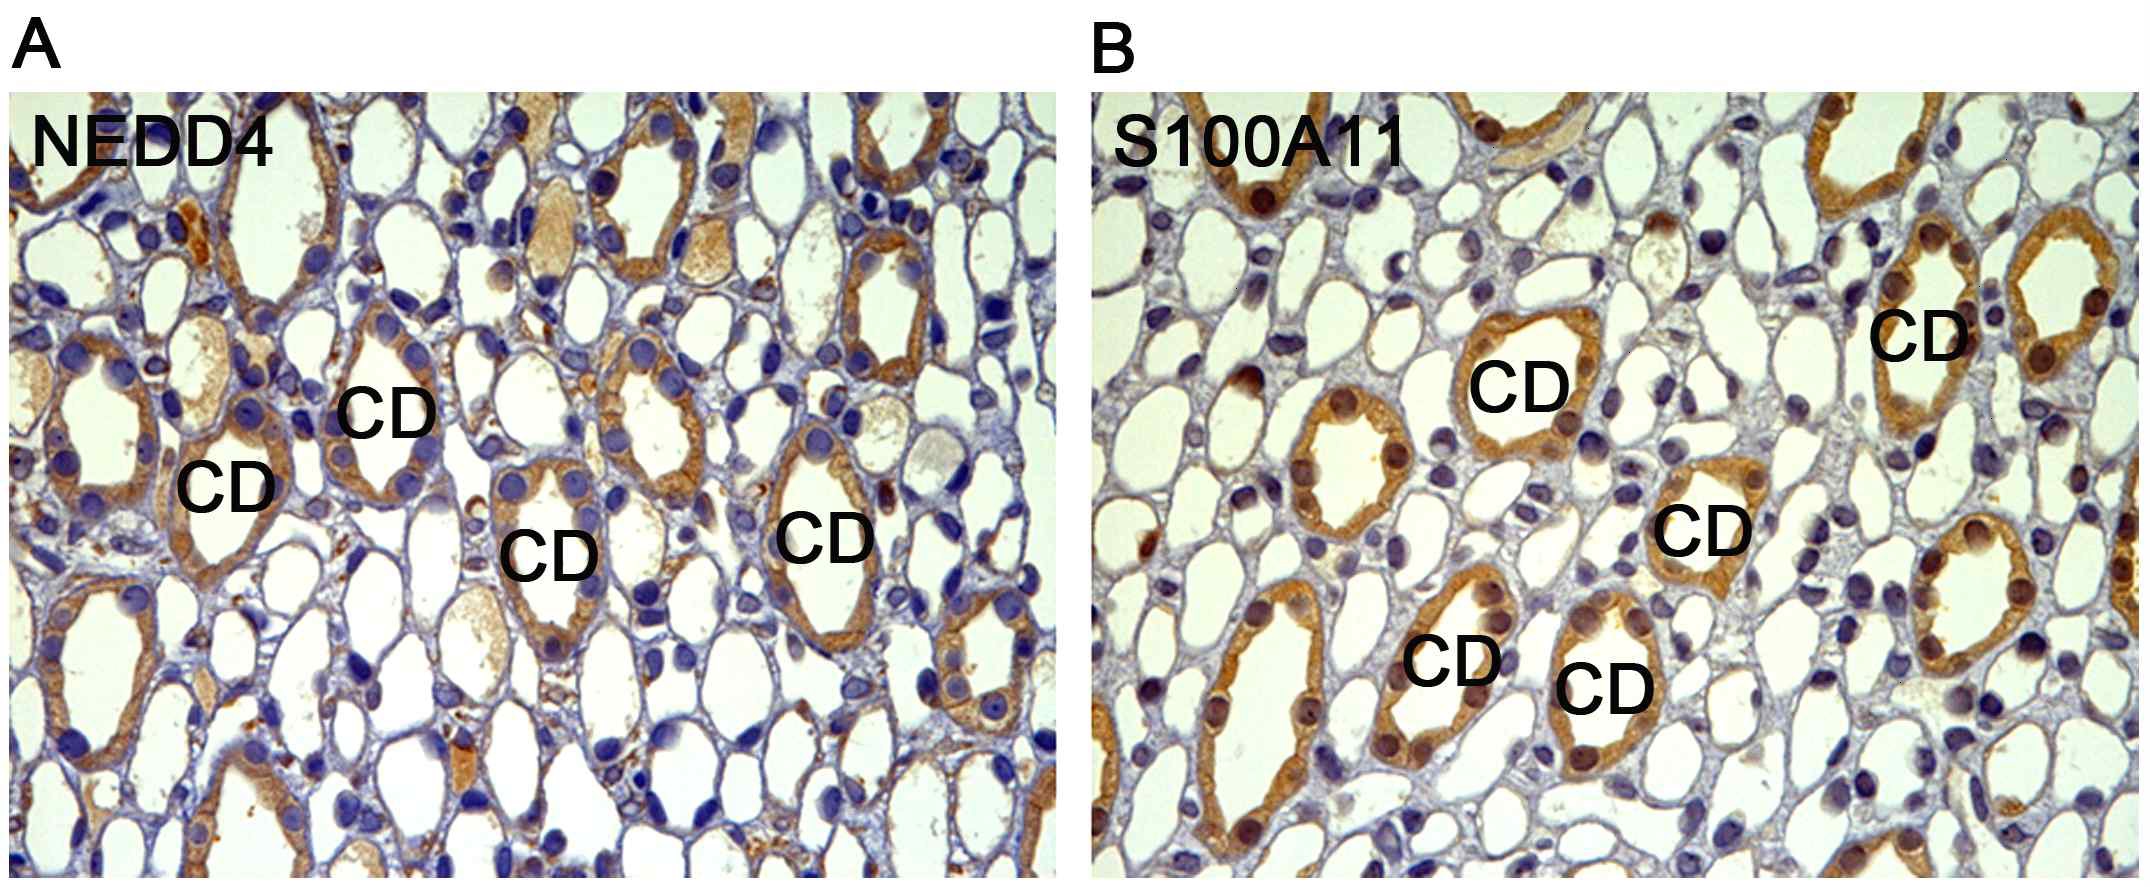 그림. NEDD4 기질 후보 단백질 중 S100A11을 우선 선정하여 면역 염색법을 시행한 결과, S100A11 은 신장 속수질 집합관에서 발현됨을 확인함.